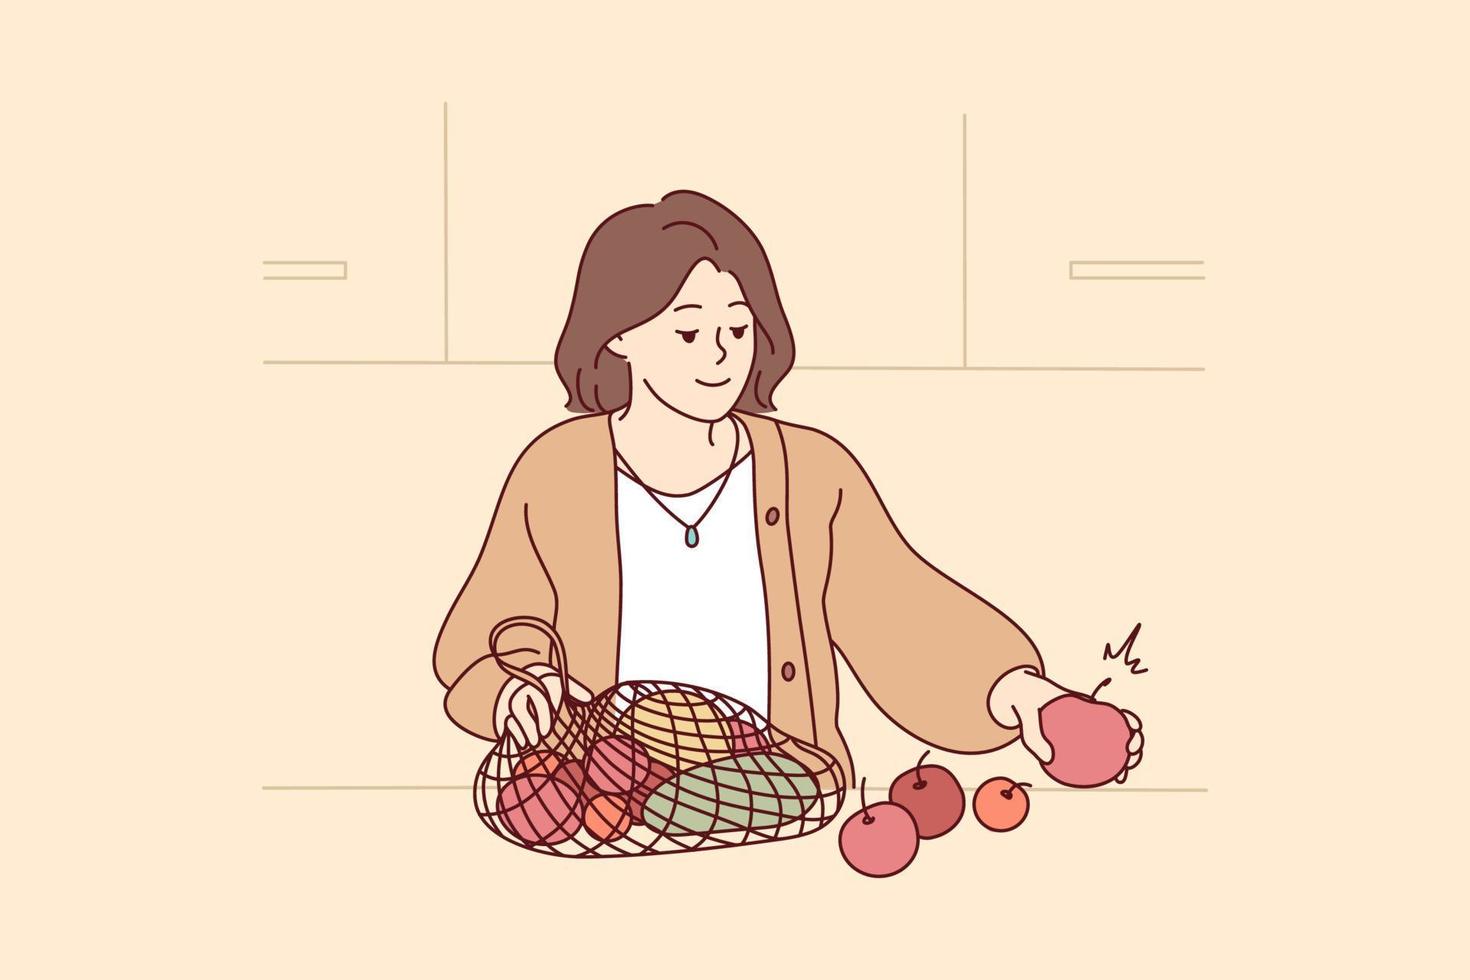 femme déballage sac avec Frais des fruits et des légumes. souriant femelle achats pour biologique des produits suivre en bonne santé nutrition régime. vecteur illustration.